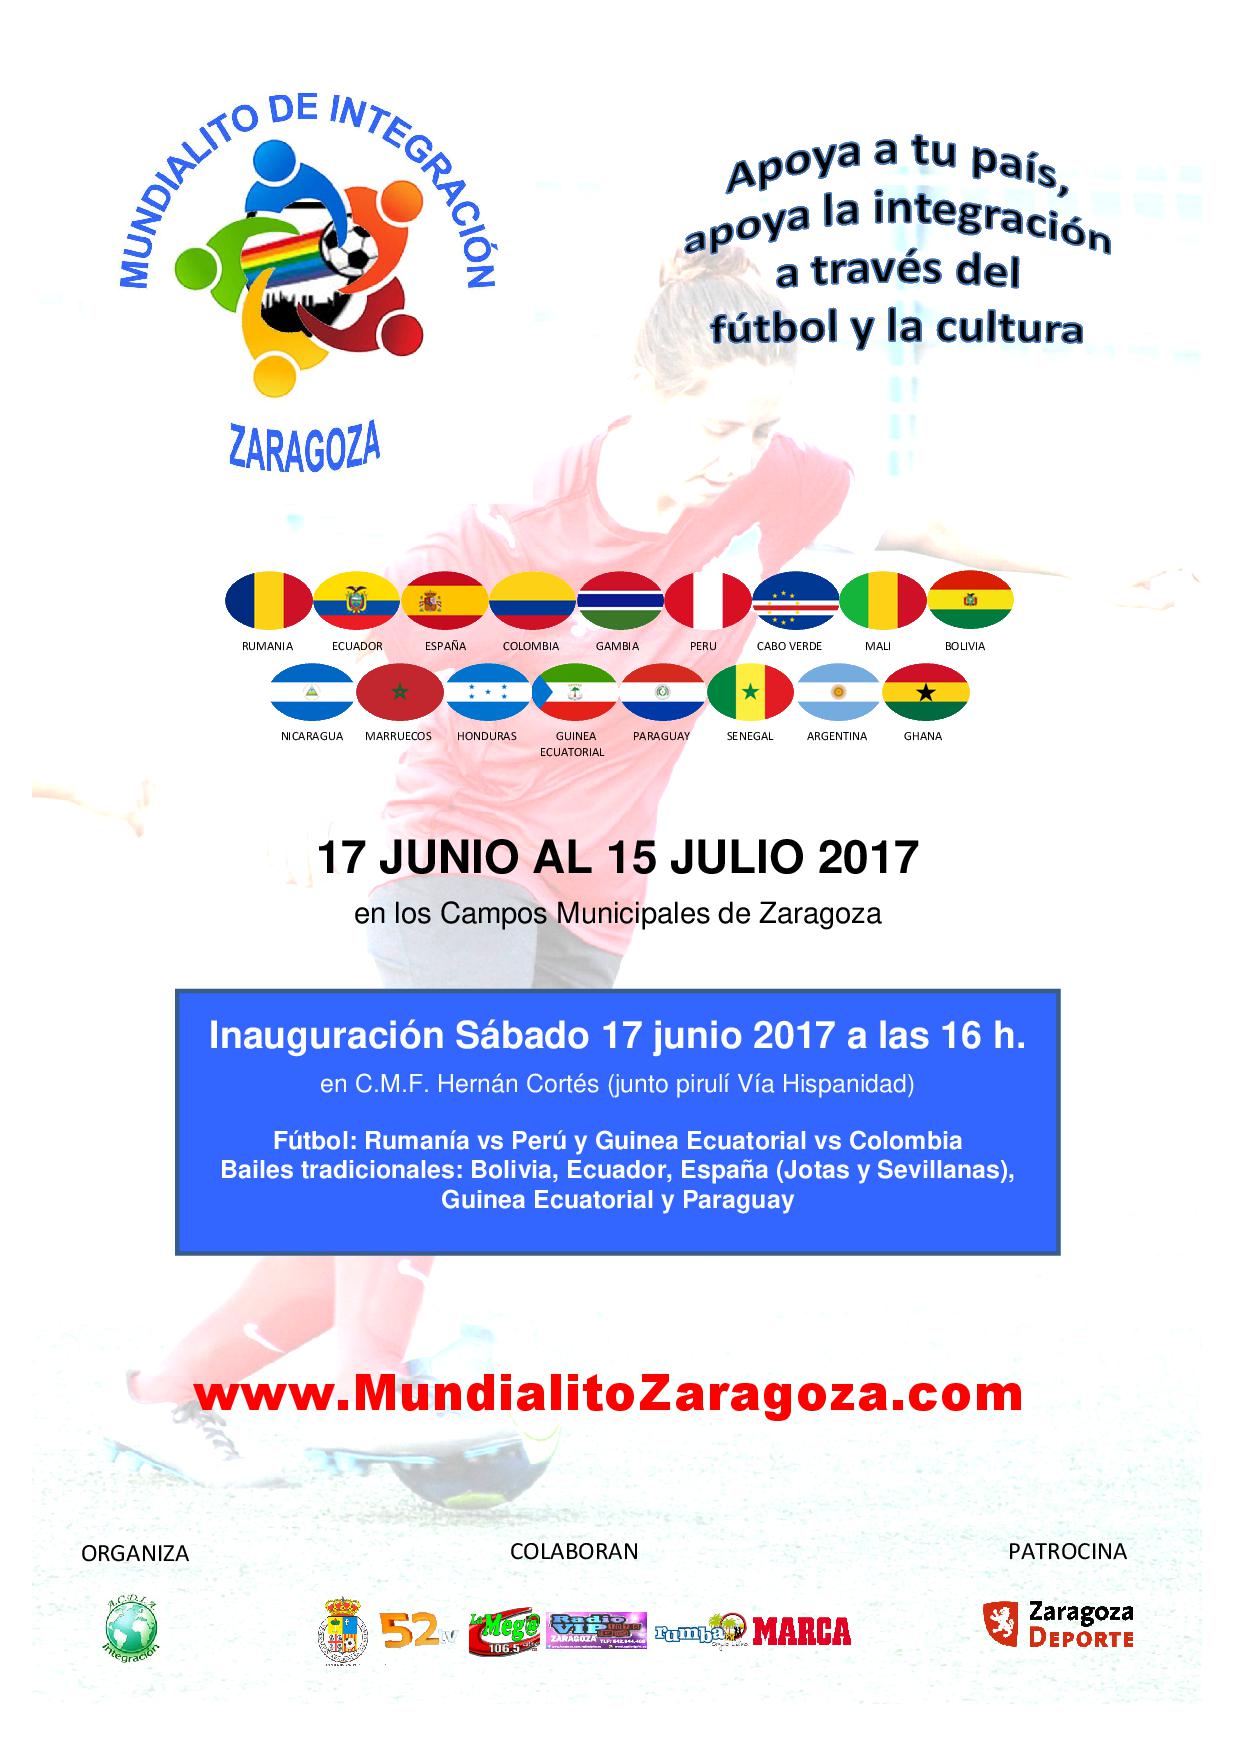 Cartel del XI Mundialito de Integración Zaragoza 2017